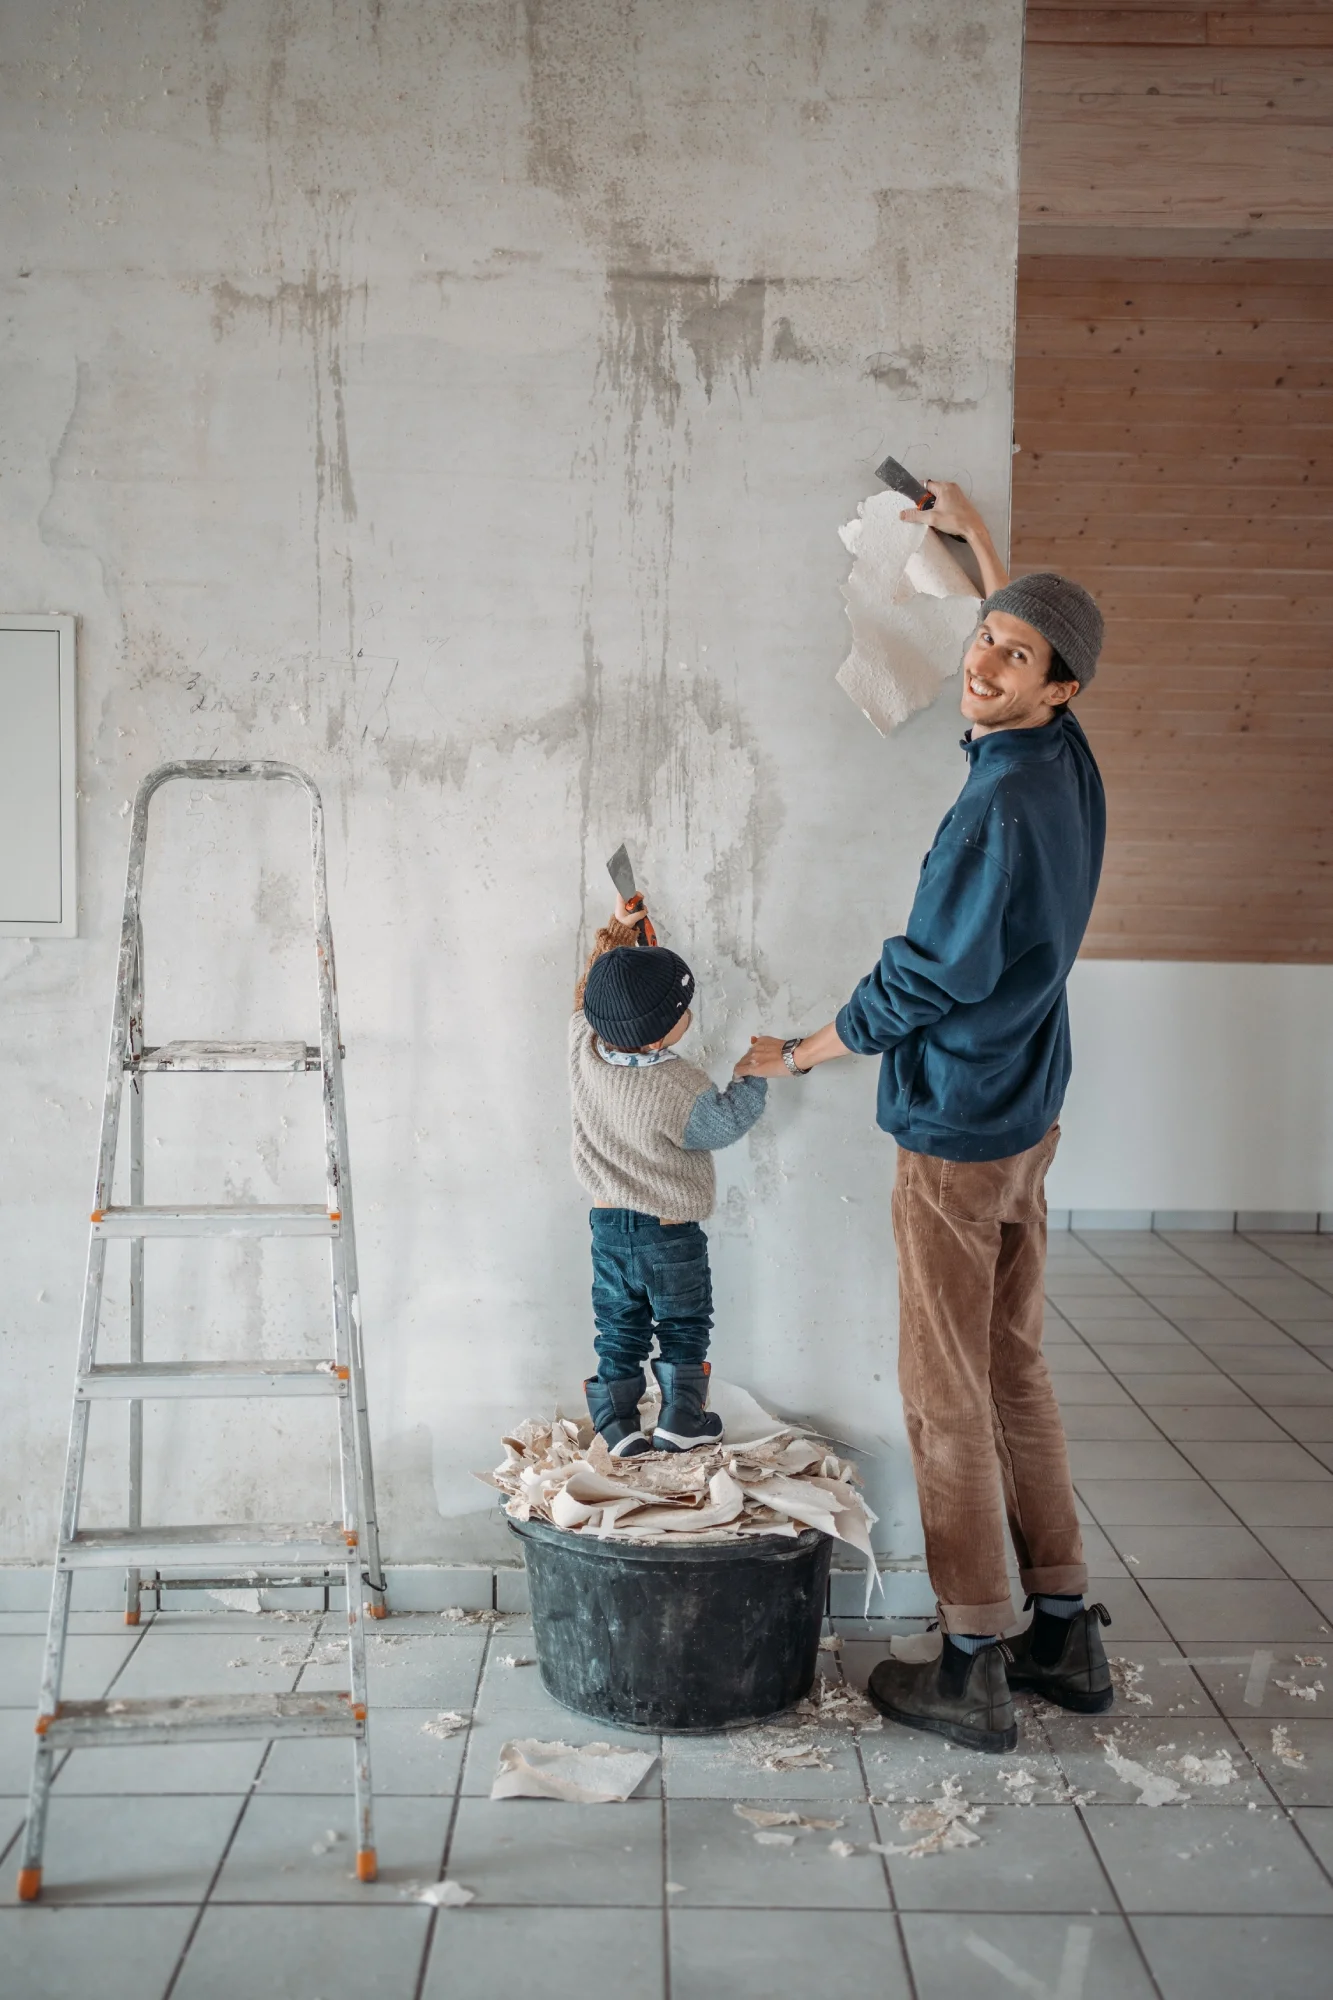 Mann entfernt Tapete von einer Wand. Neben ihm steht ein kleines Kind erhöht auf einem Eimer, daneben eine Leiter.